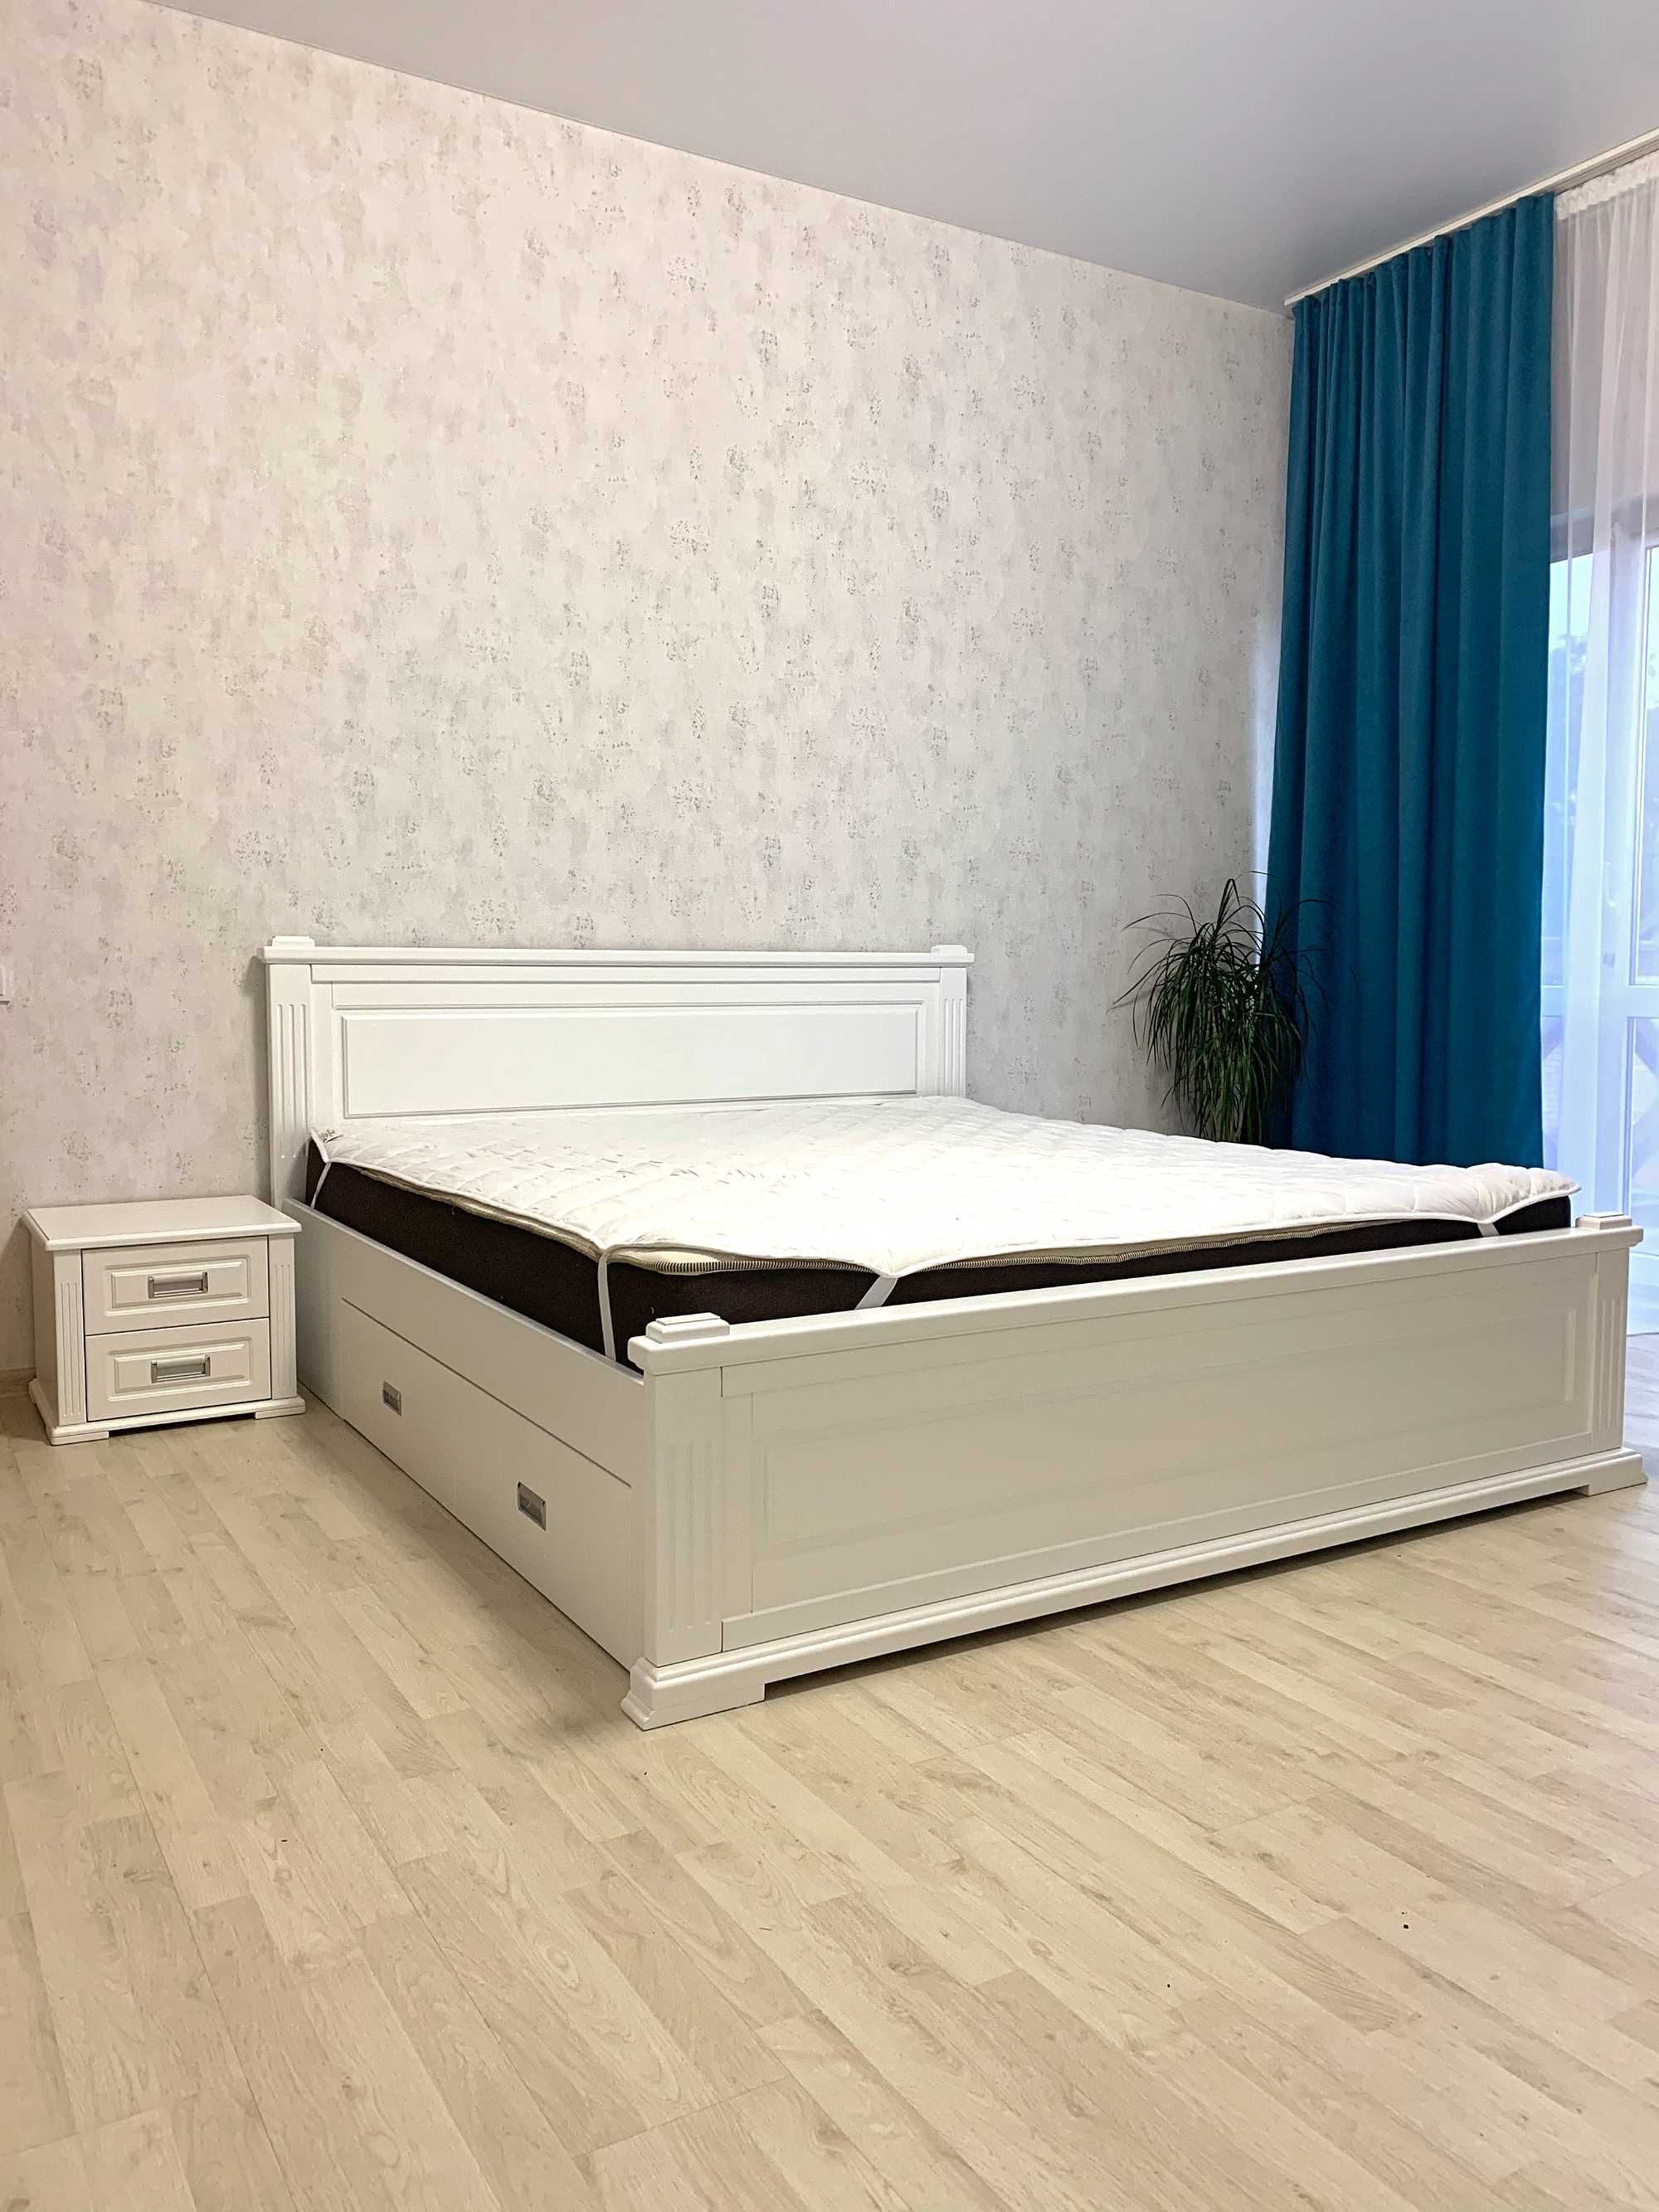 Двоспальне дерев'яне ліжко "Прайм". Лідер продажу